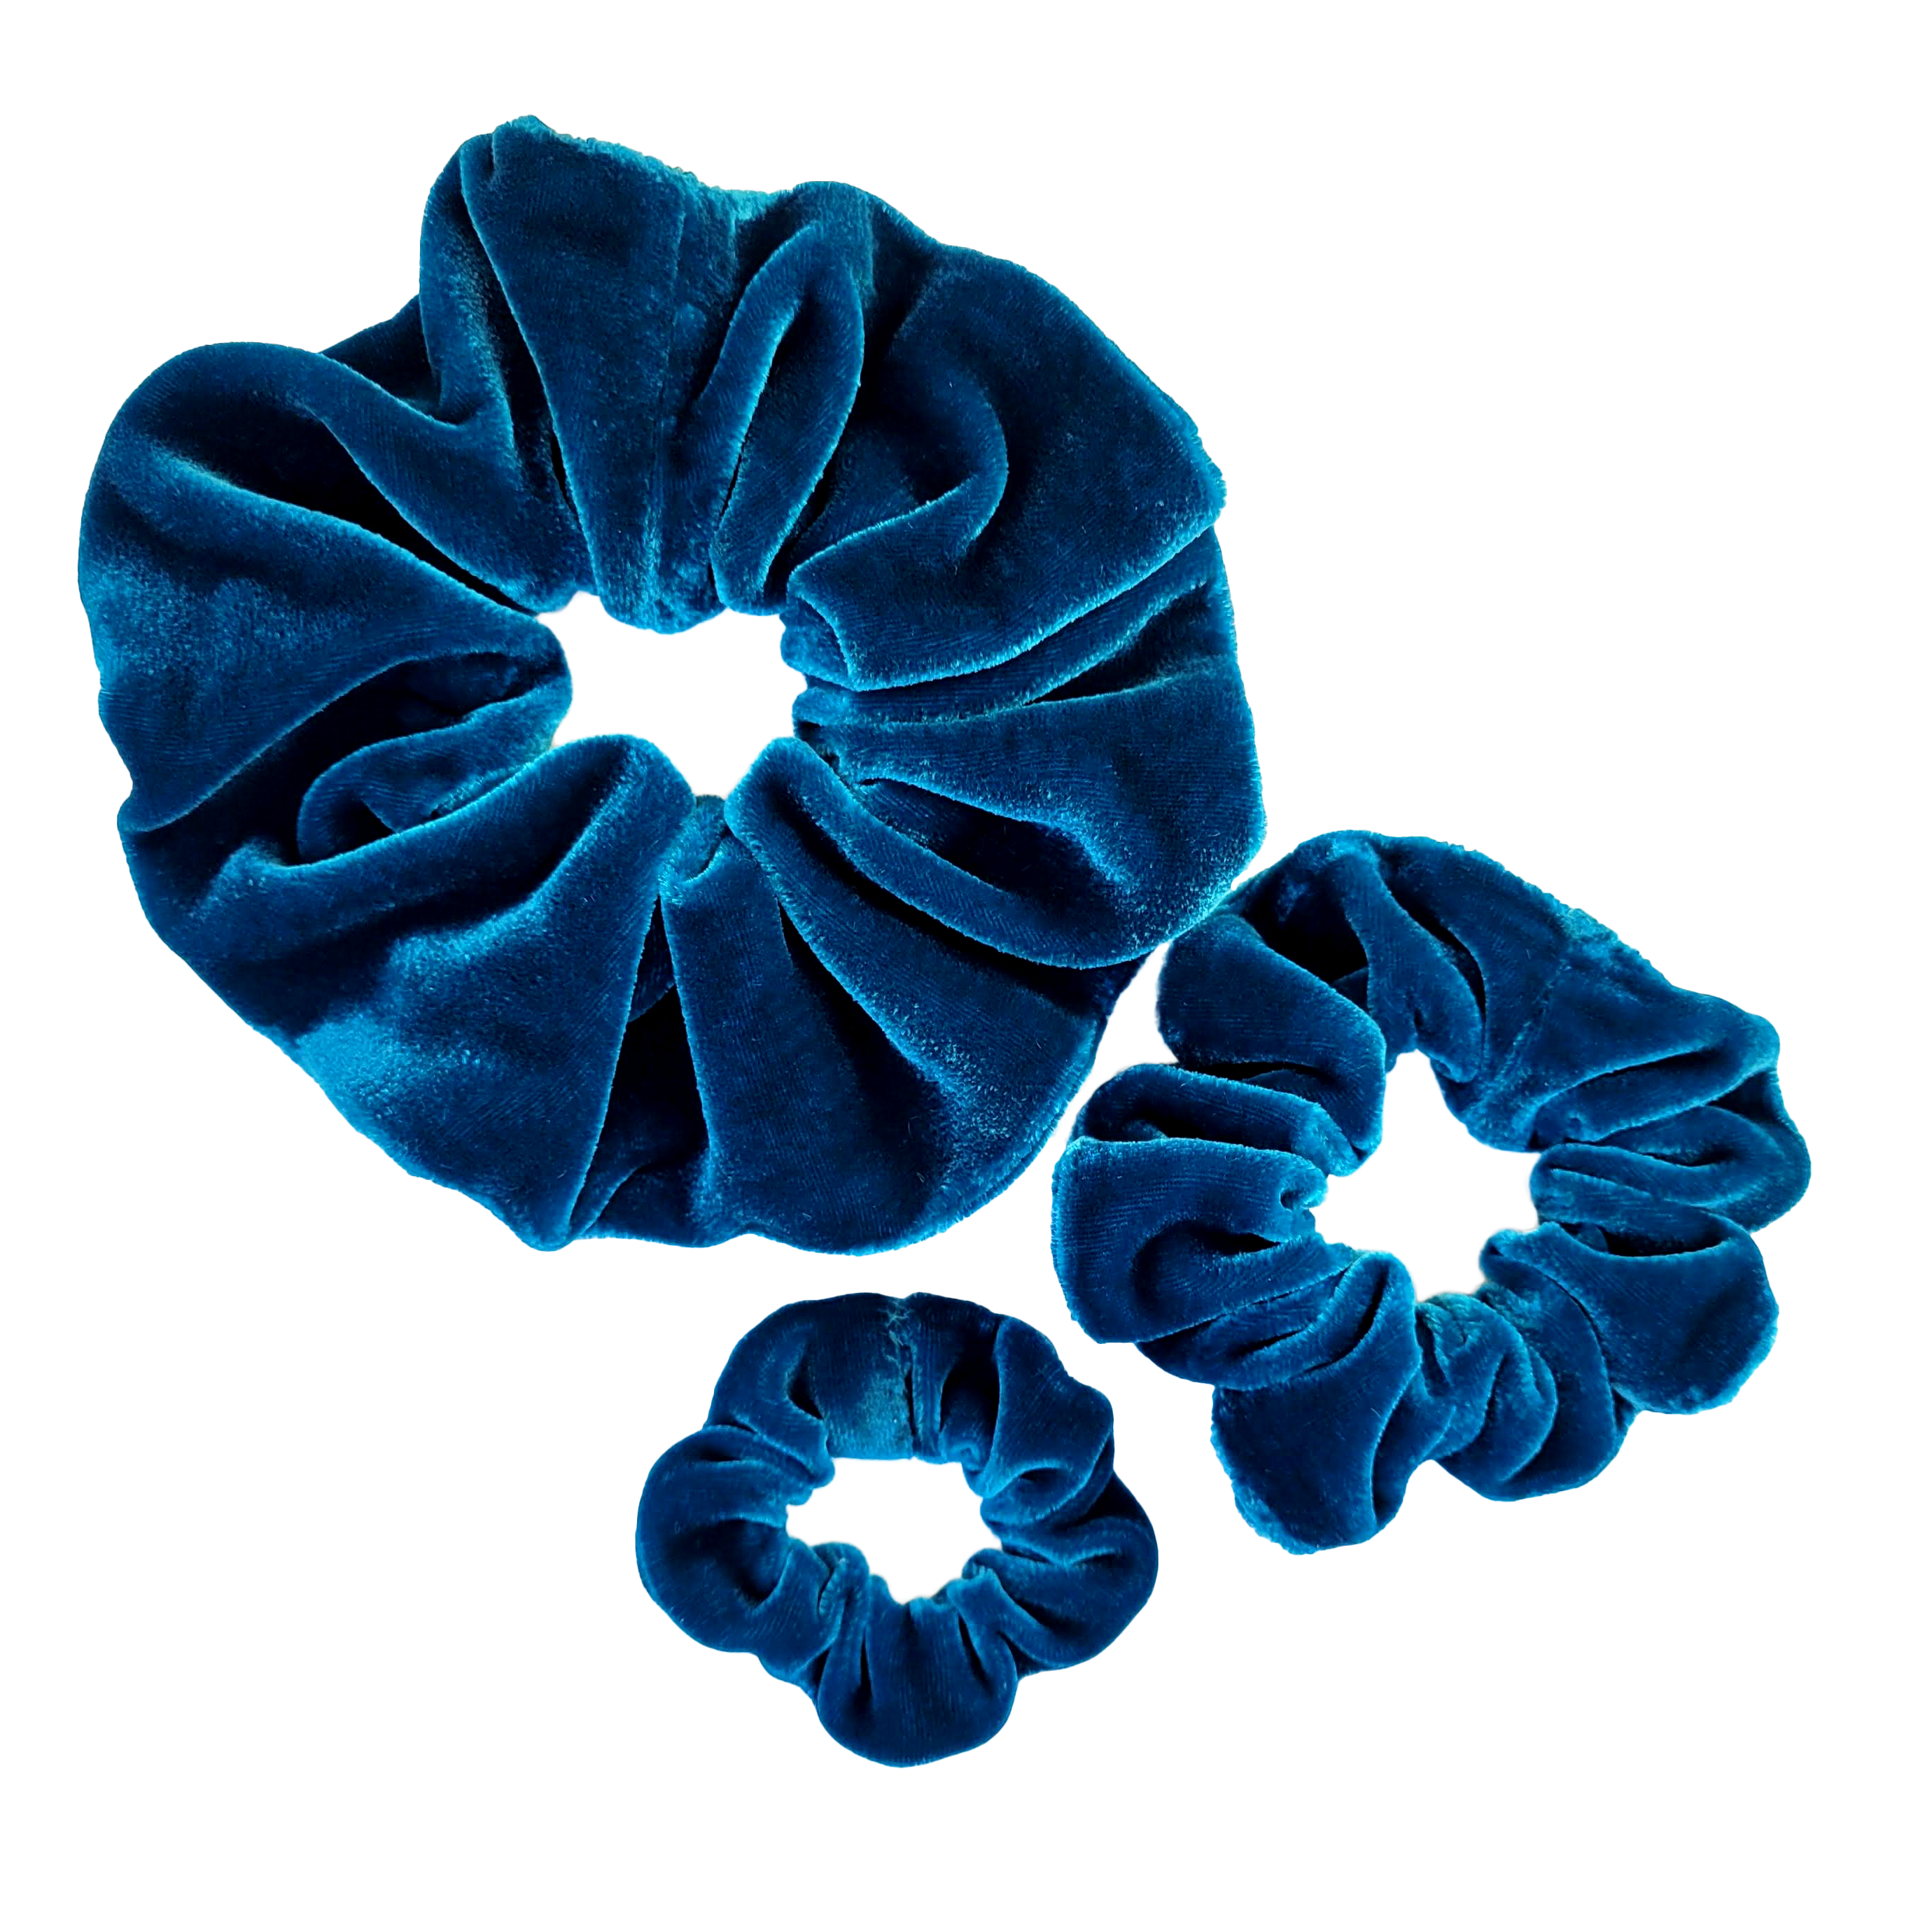 small medium large size velvet scrunchies for hair handmade by Lynne Kiel